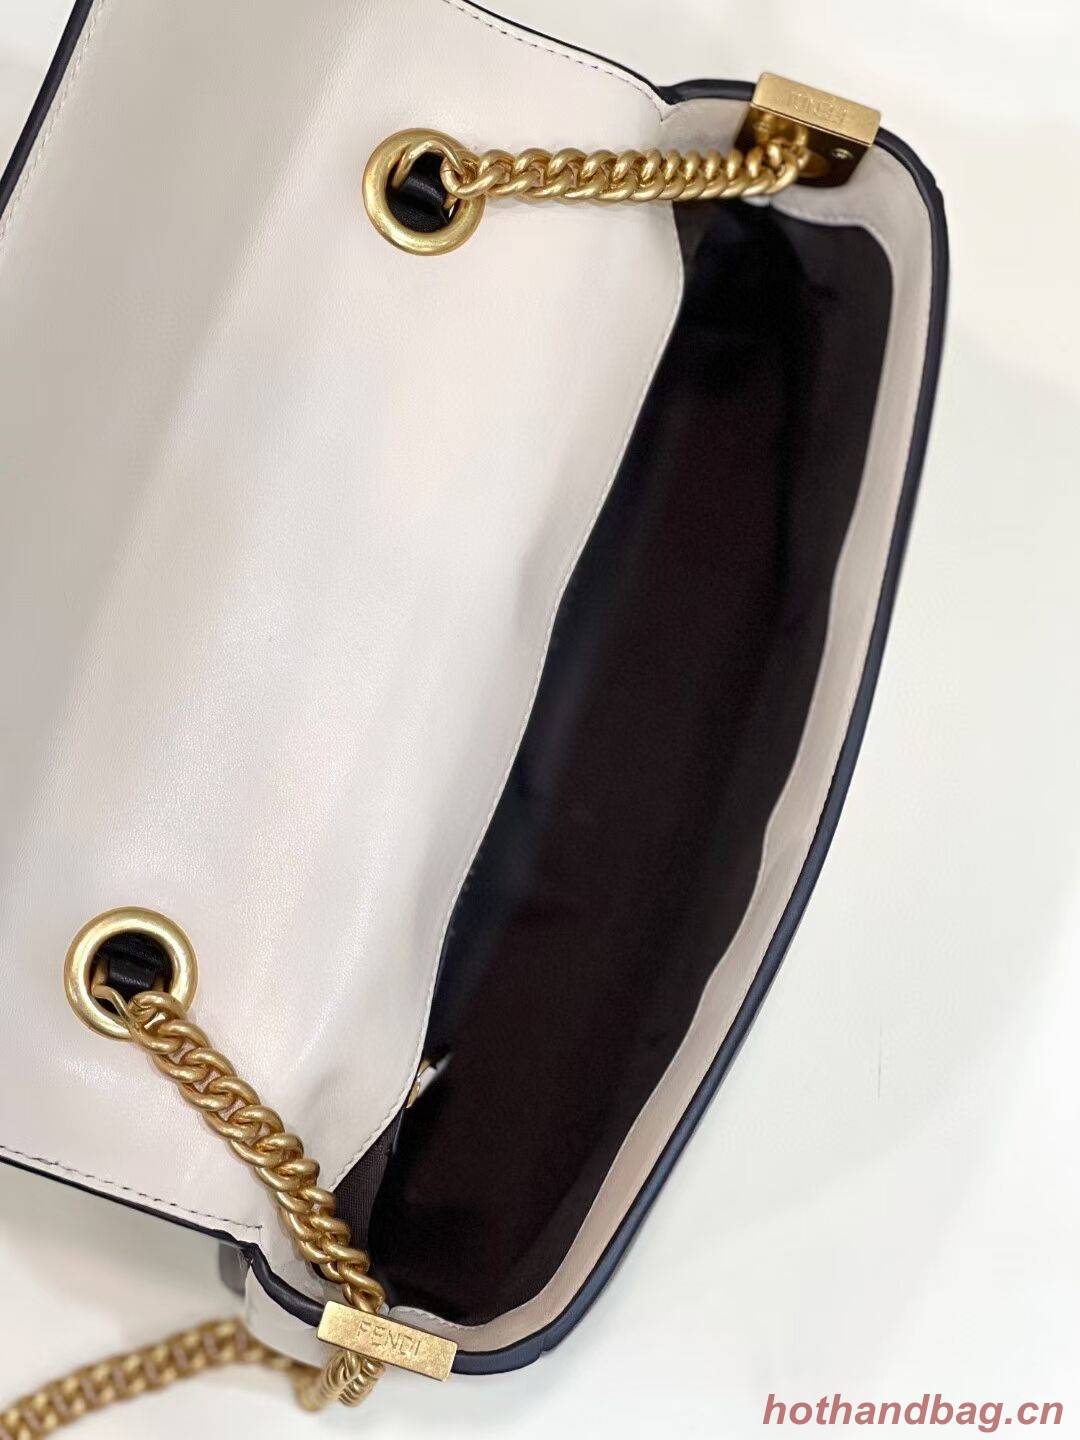 Fendi Baguette Sheepskin bag 8BR6550 Cream & black